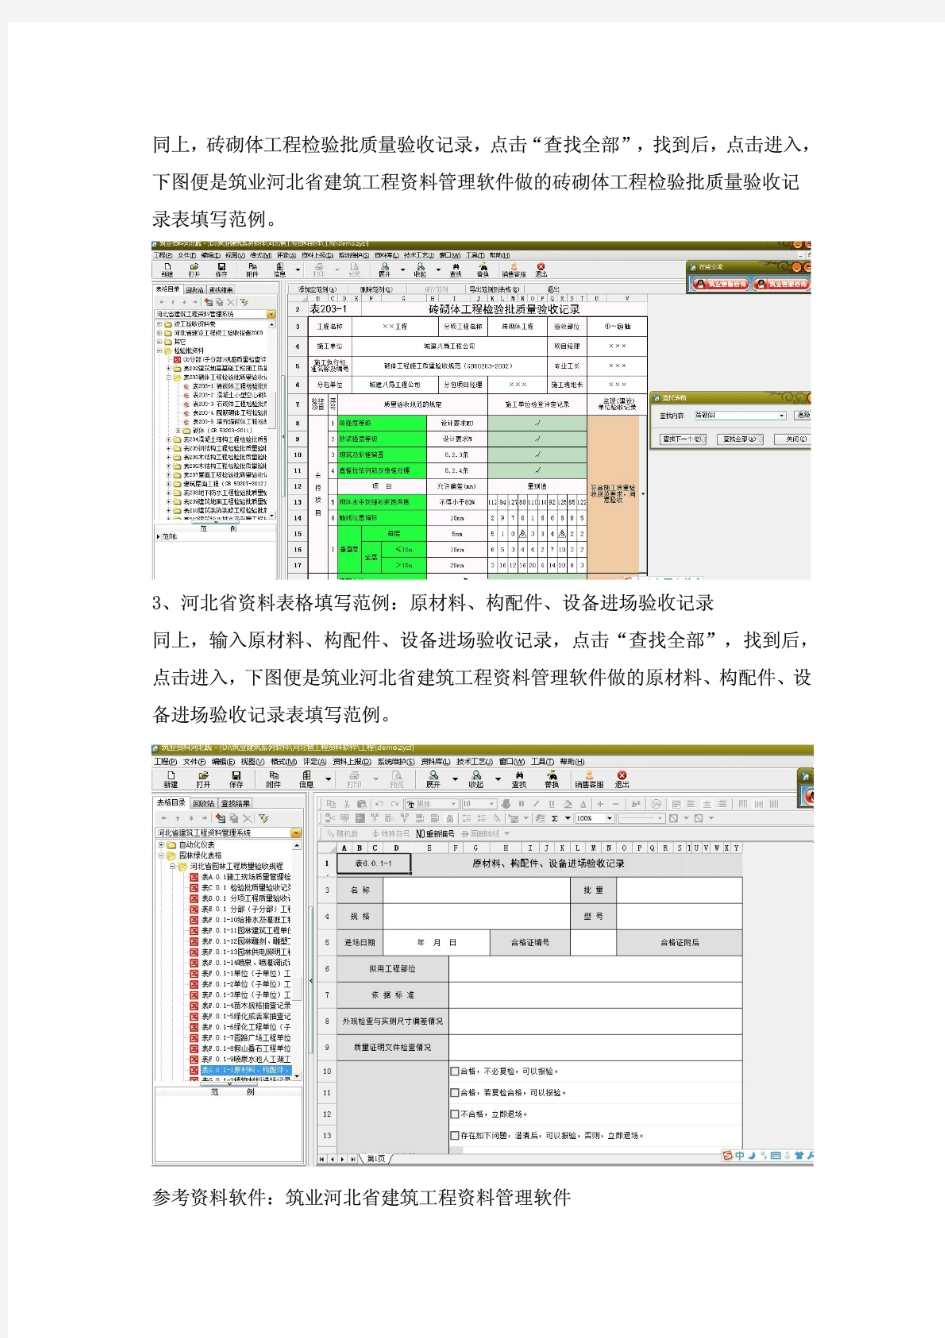 筑业河北省建筑工程资料管理软件教你如何填写资料以及填写范例